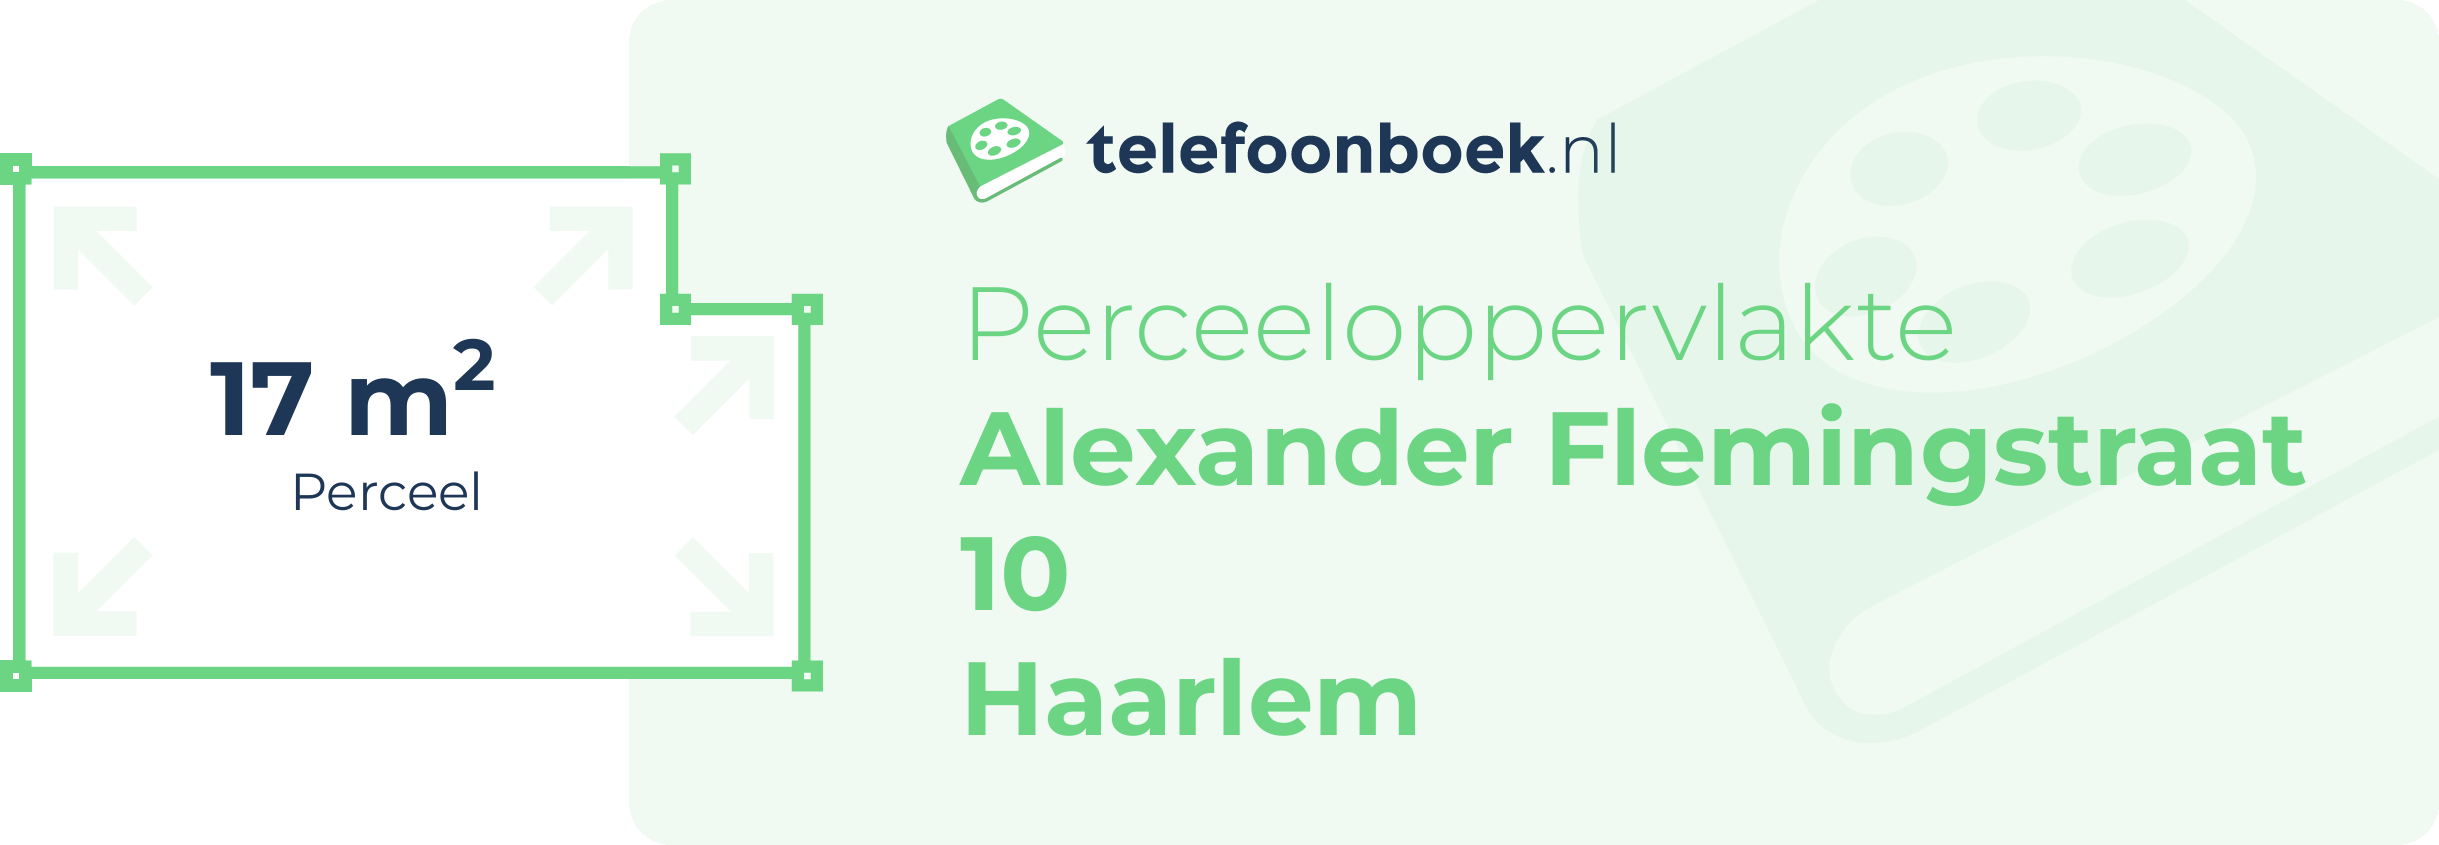 Perceeloppervlakte Alexander Flemingstraat 10 Haarlem